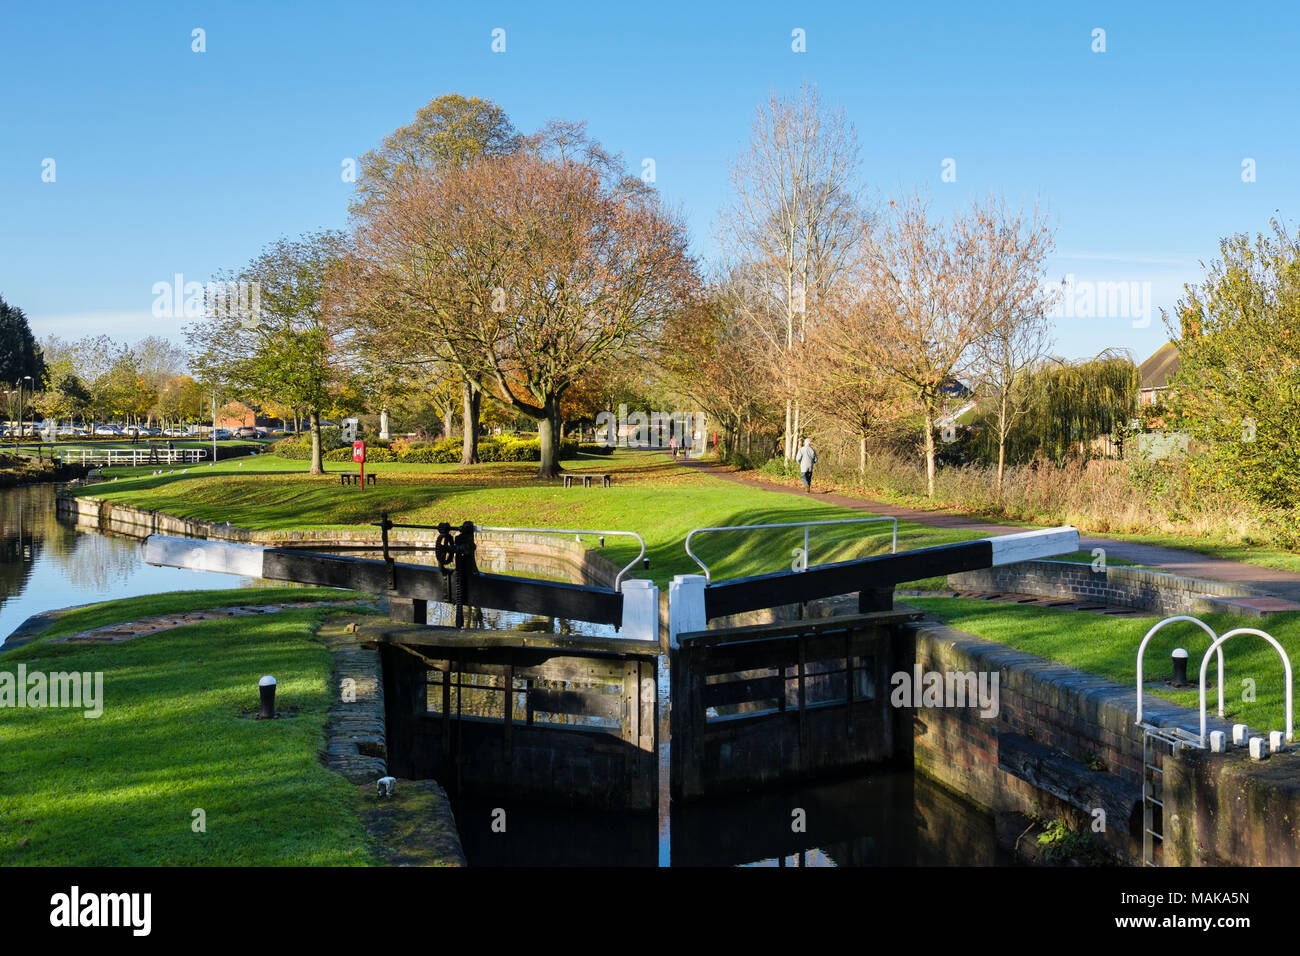 Barge Canal d'écluses à l'automne. Parc des vignes, Droitwich Spa, Worcestershire, Angleterre, Royaume-Uni, Angleterre Banque D'Images